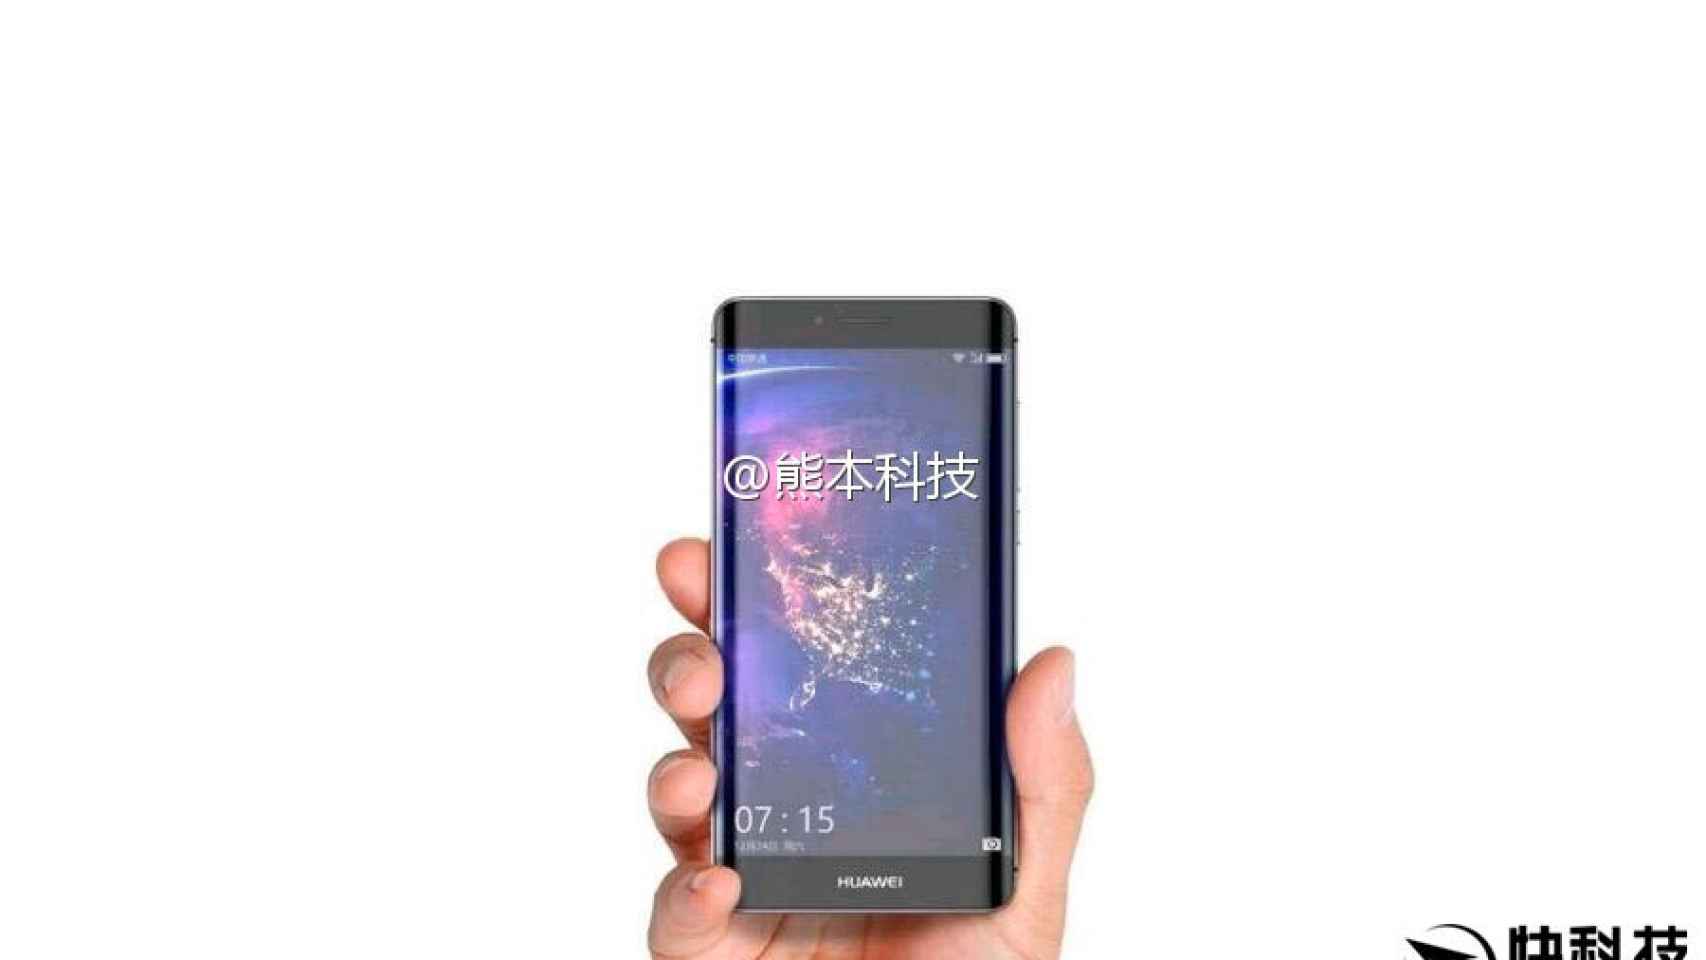 El Huawei P10 Plus en imágenes: la versión con curvas del Huawei P10